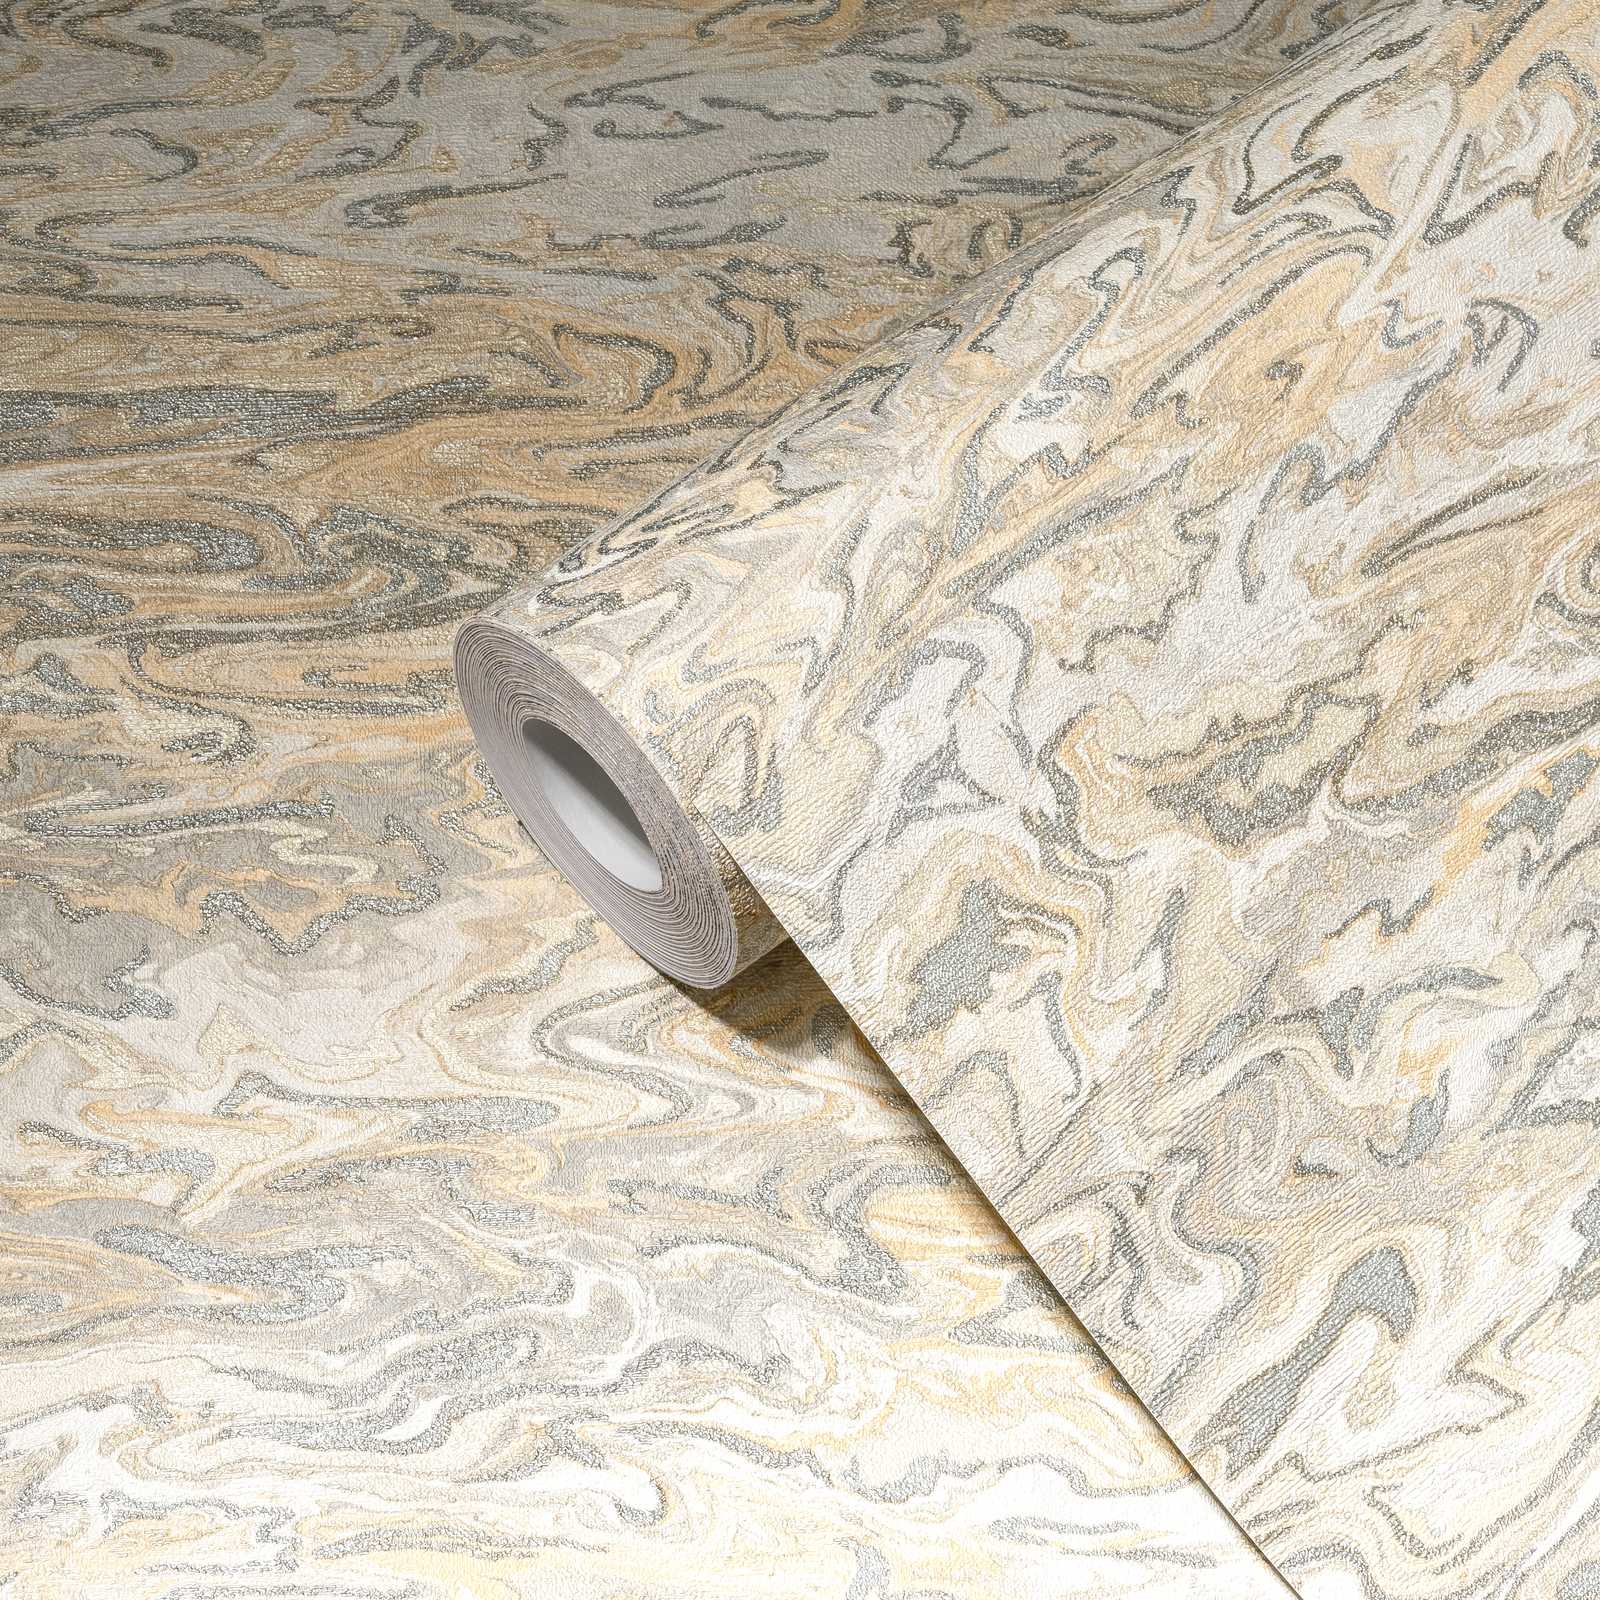             Papier peint marbré design abstrait - beige, gris, crème
        